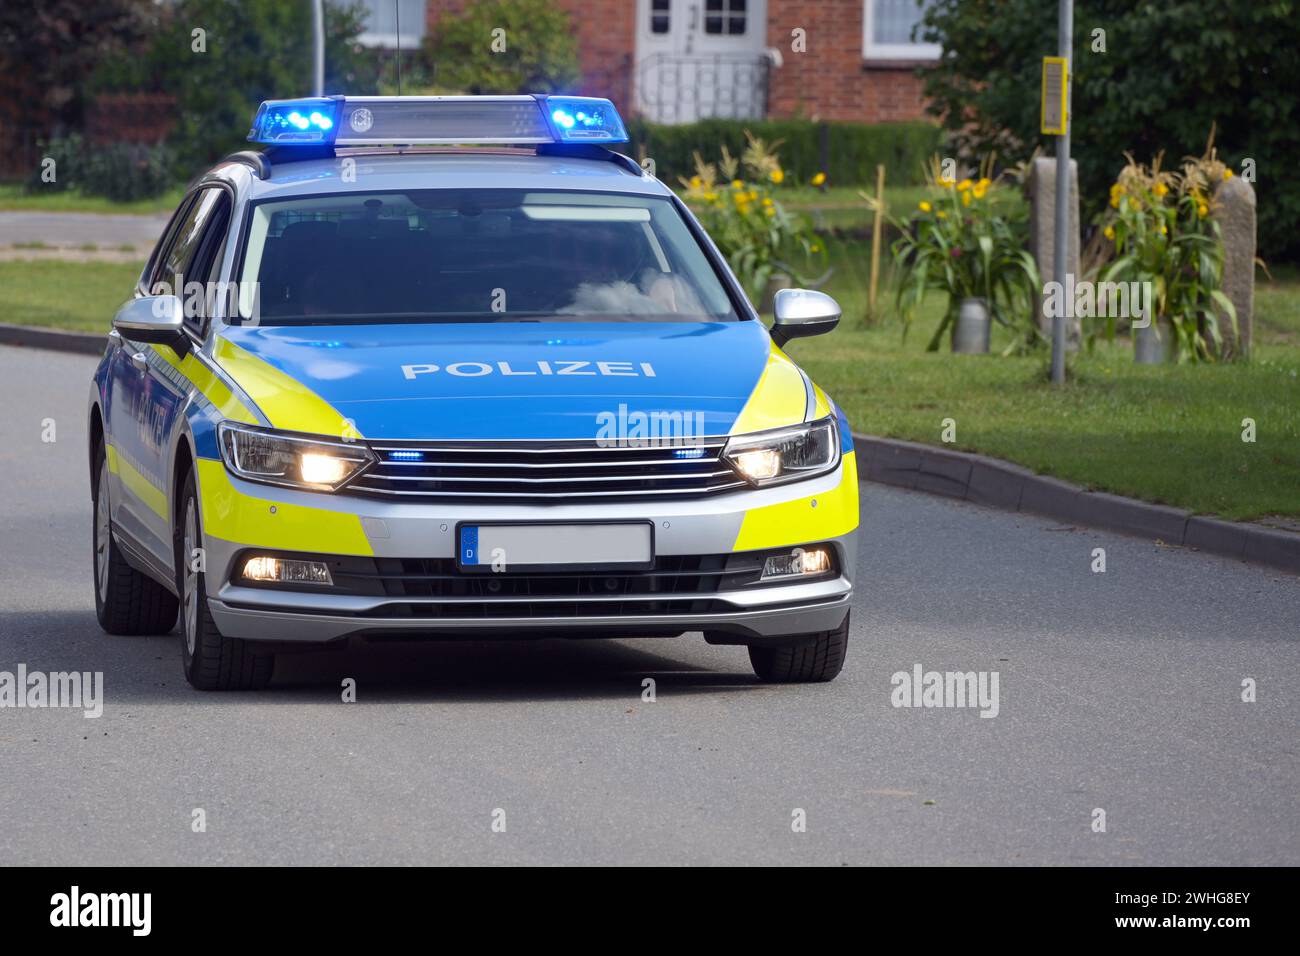 Auto della polizia tedesca in servizio con luci blu lampeggianti accese attraverso un sobborgo rurale, iscrizione Polizei significa polizia, copia spp Foto Stock